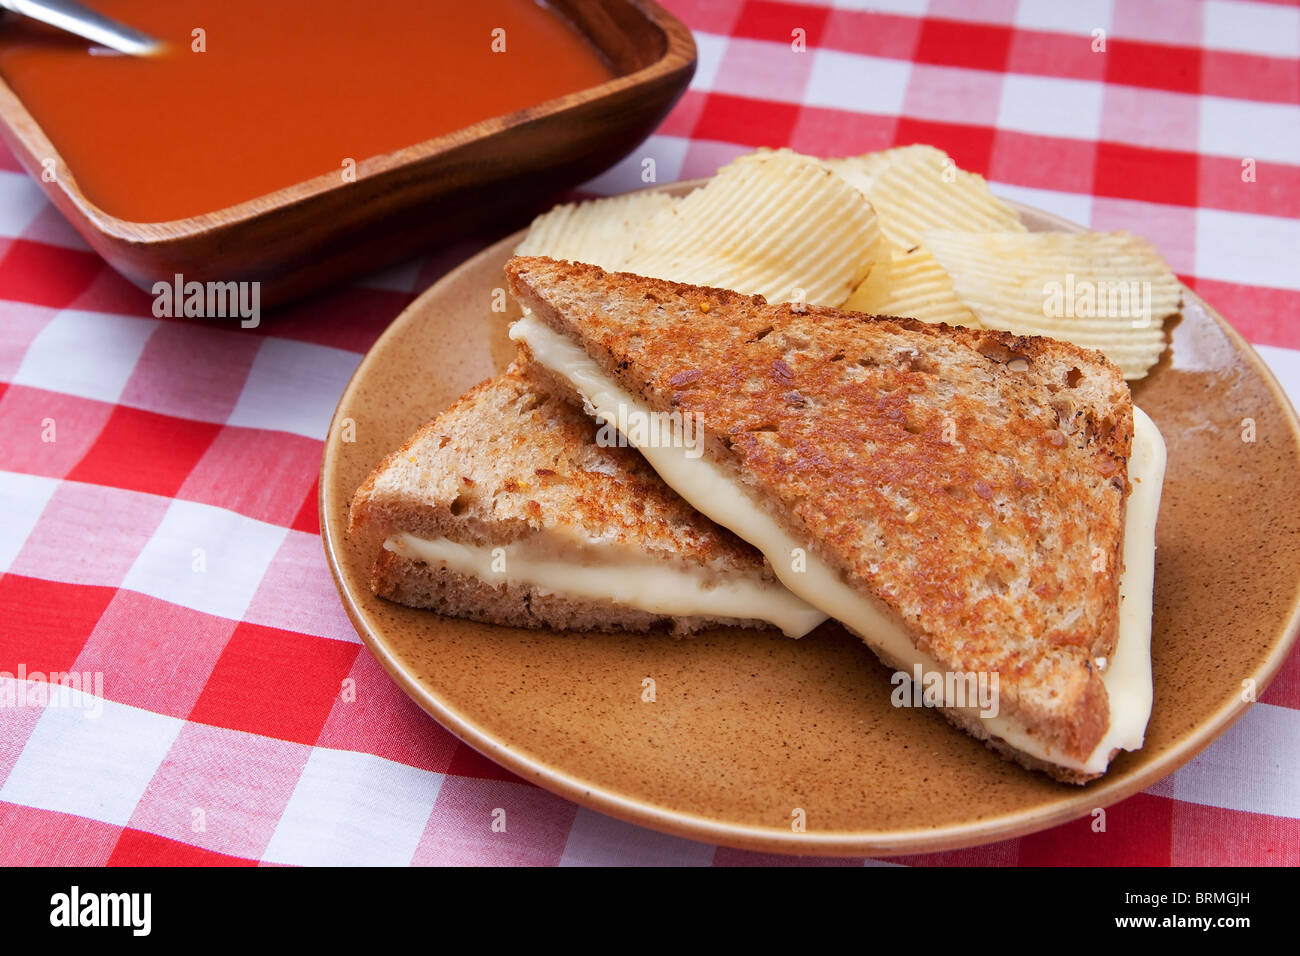 Une soupe et un sandwich - un classique américain avec du fromage grillé et soupe de tomate Banque D'Images